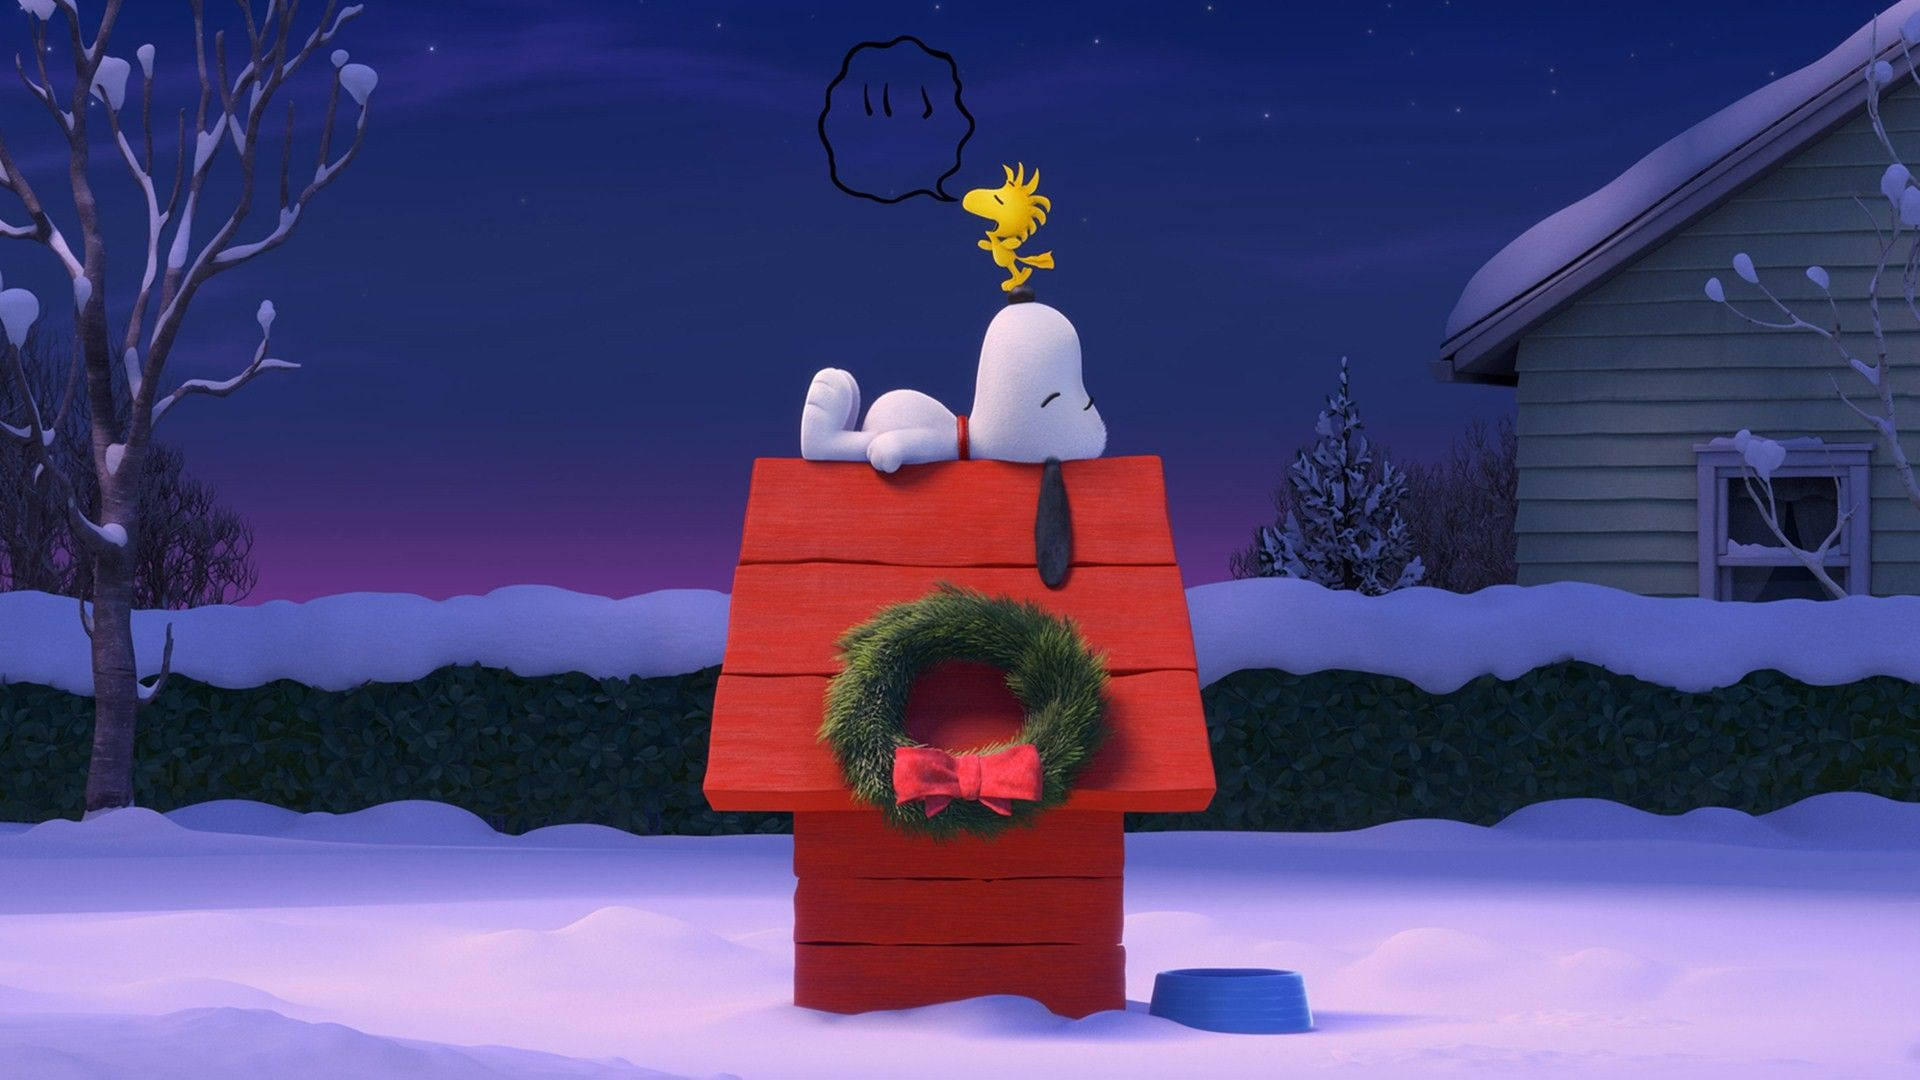 Snoopyy Su Perro Están Sentados En Un Árbol De Navidad. Fondo de pantalla